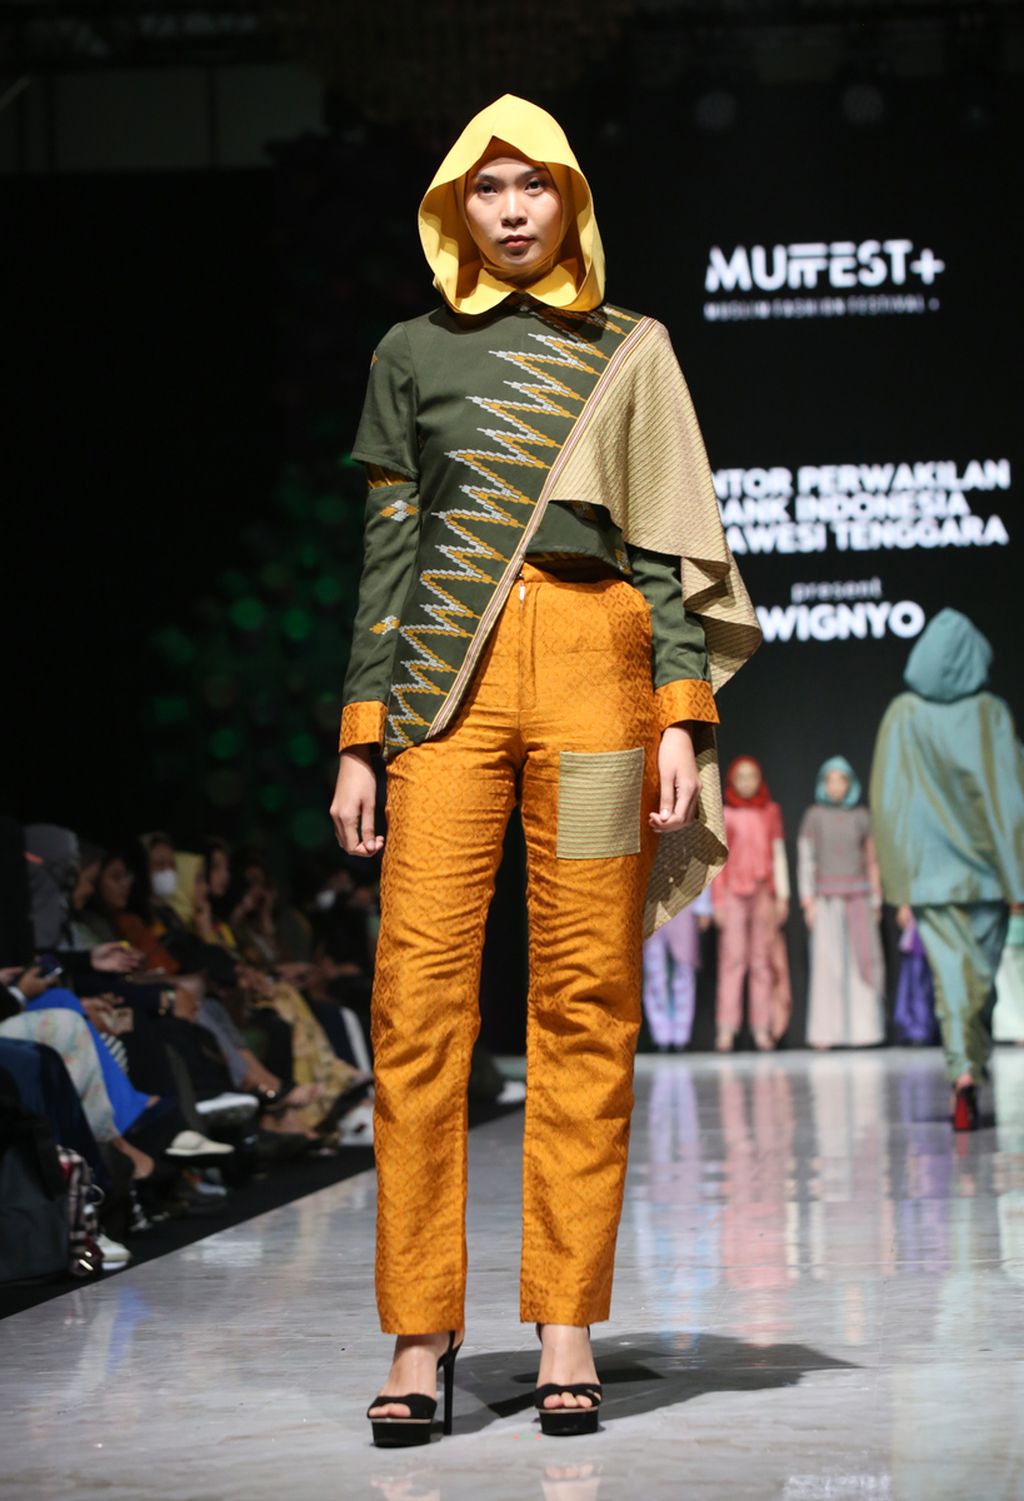 Karya perancang Wignyo di ajang Muslim Fashion Festival 2023 di Jakarta, awal Maret 2023. 